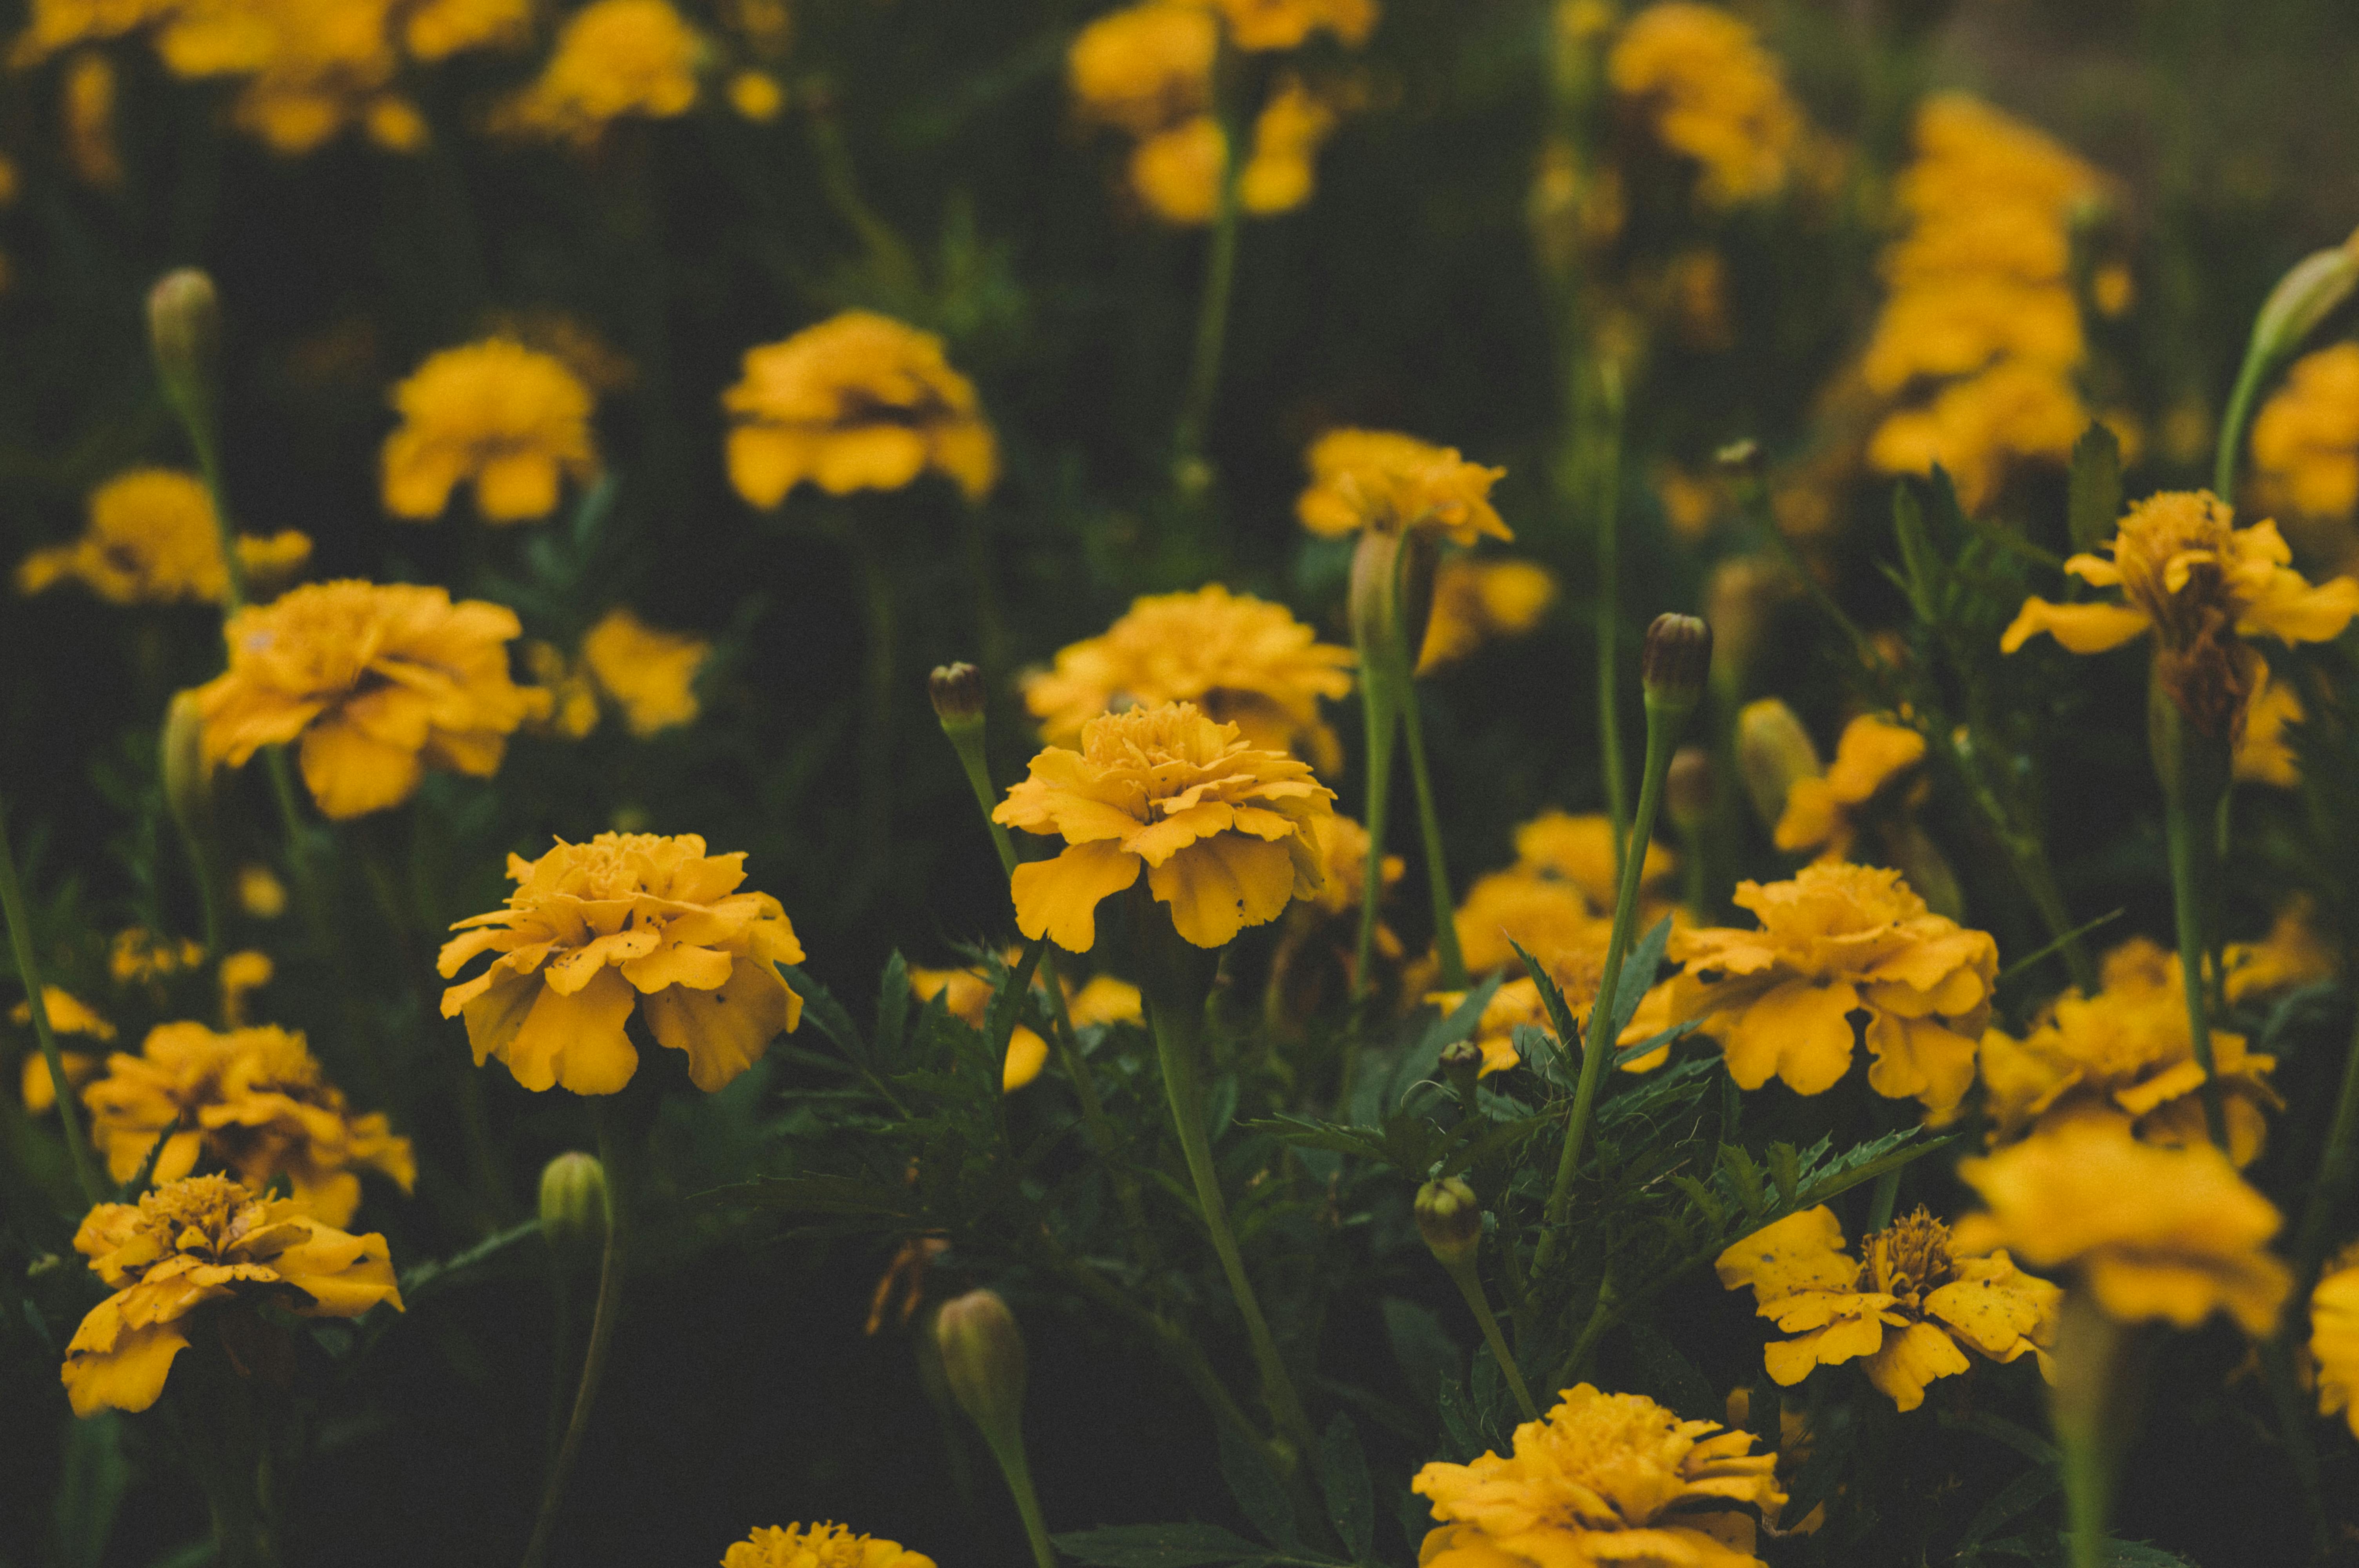 Cuộc sống tràn đầy bông hoa vàng sẽ giúp bạn tìm thấy sự bình yên, sự tươi trẻ và cảm giác hạnh phúc. Và giờ đây, bạn sẽ được tận hưởng cảm giác đó bất cứ lúc nào với hình ảnh những bông hoa vàng được chọn lọc. Tải ngay để trải nghiệm, bạn sẽ không hối tiếc đâu.